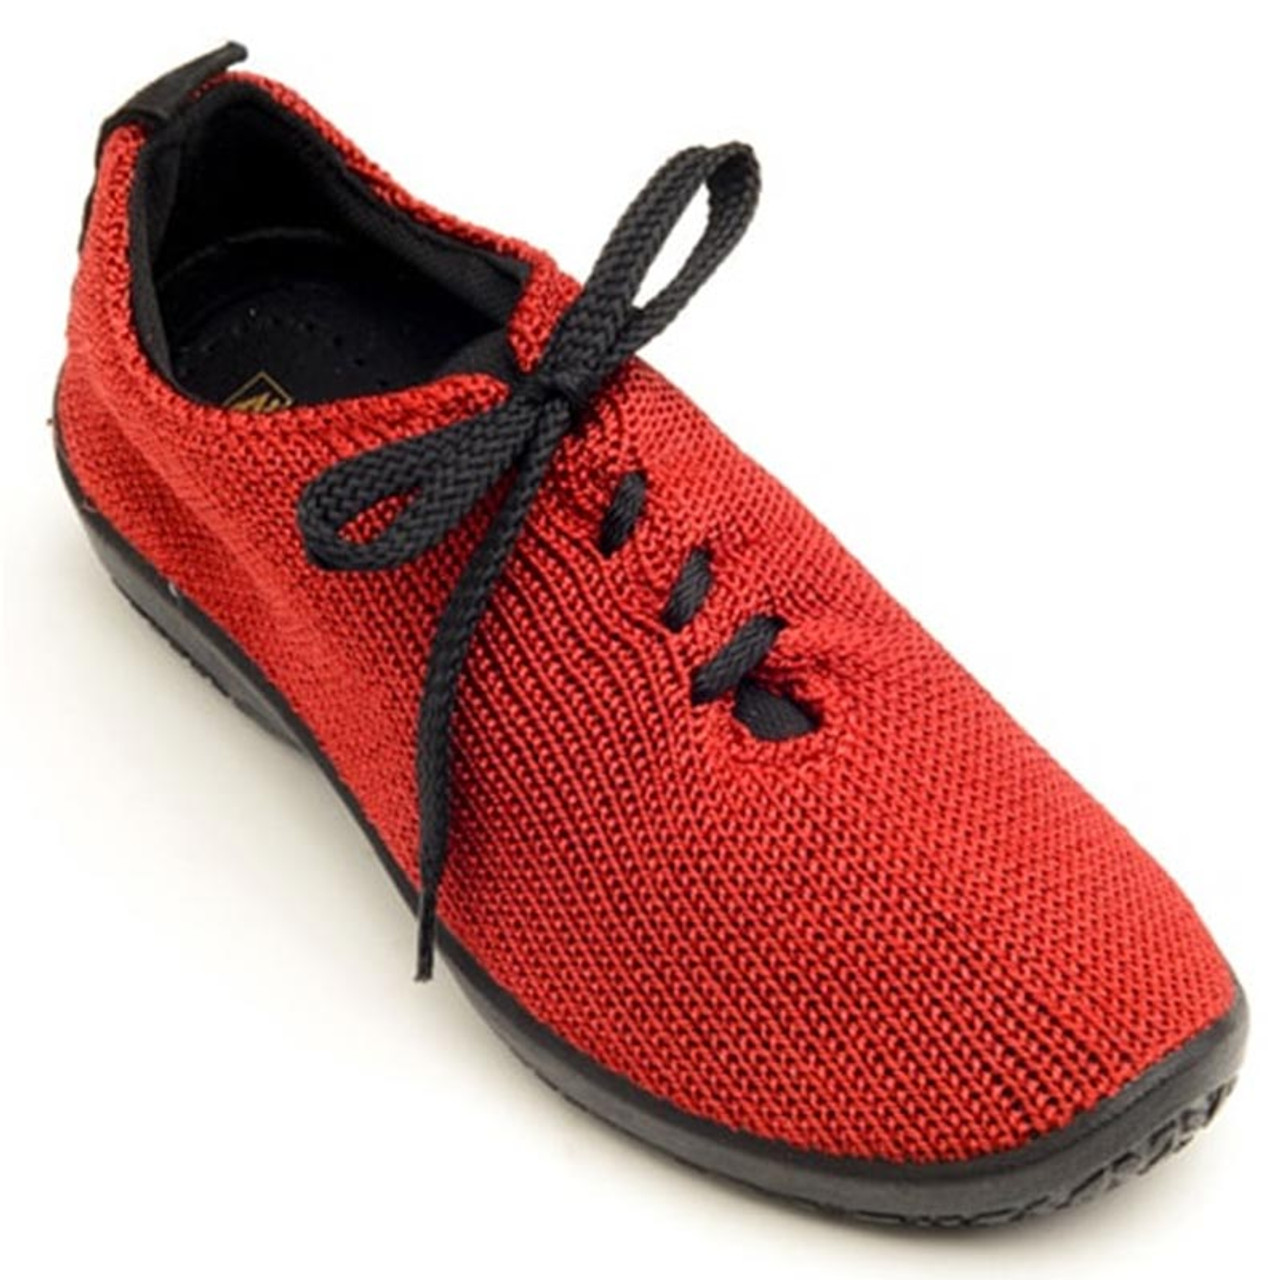 Ls красный. Arcopedico красные. Arcopedico обувь женская. Обувь Arcopedico Португалия.